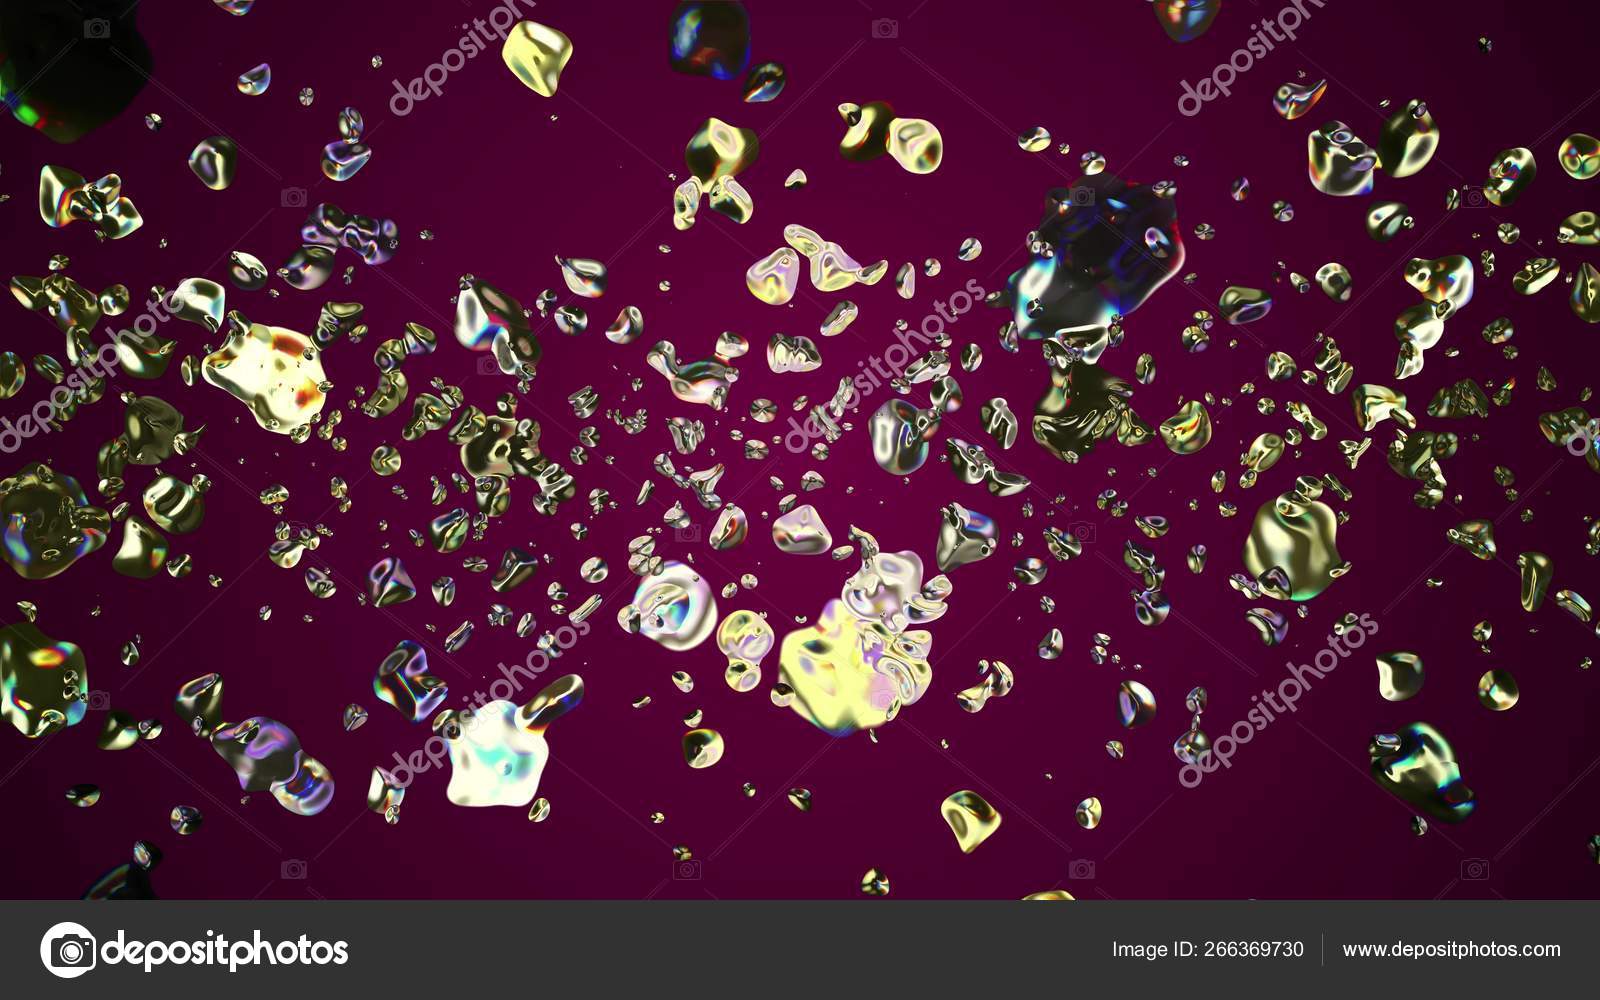 カラフルな金属の水滴が宇宙デジタルイラストの背景に拡散新しい品質の自然なグラフィッククール素敵な美しい4kストック画像 ストック写真 C Sbi